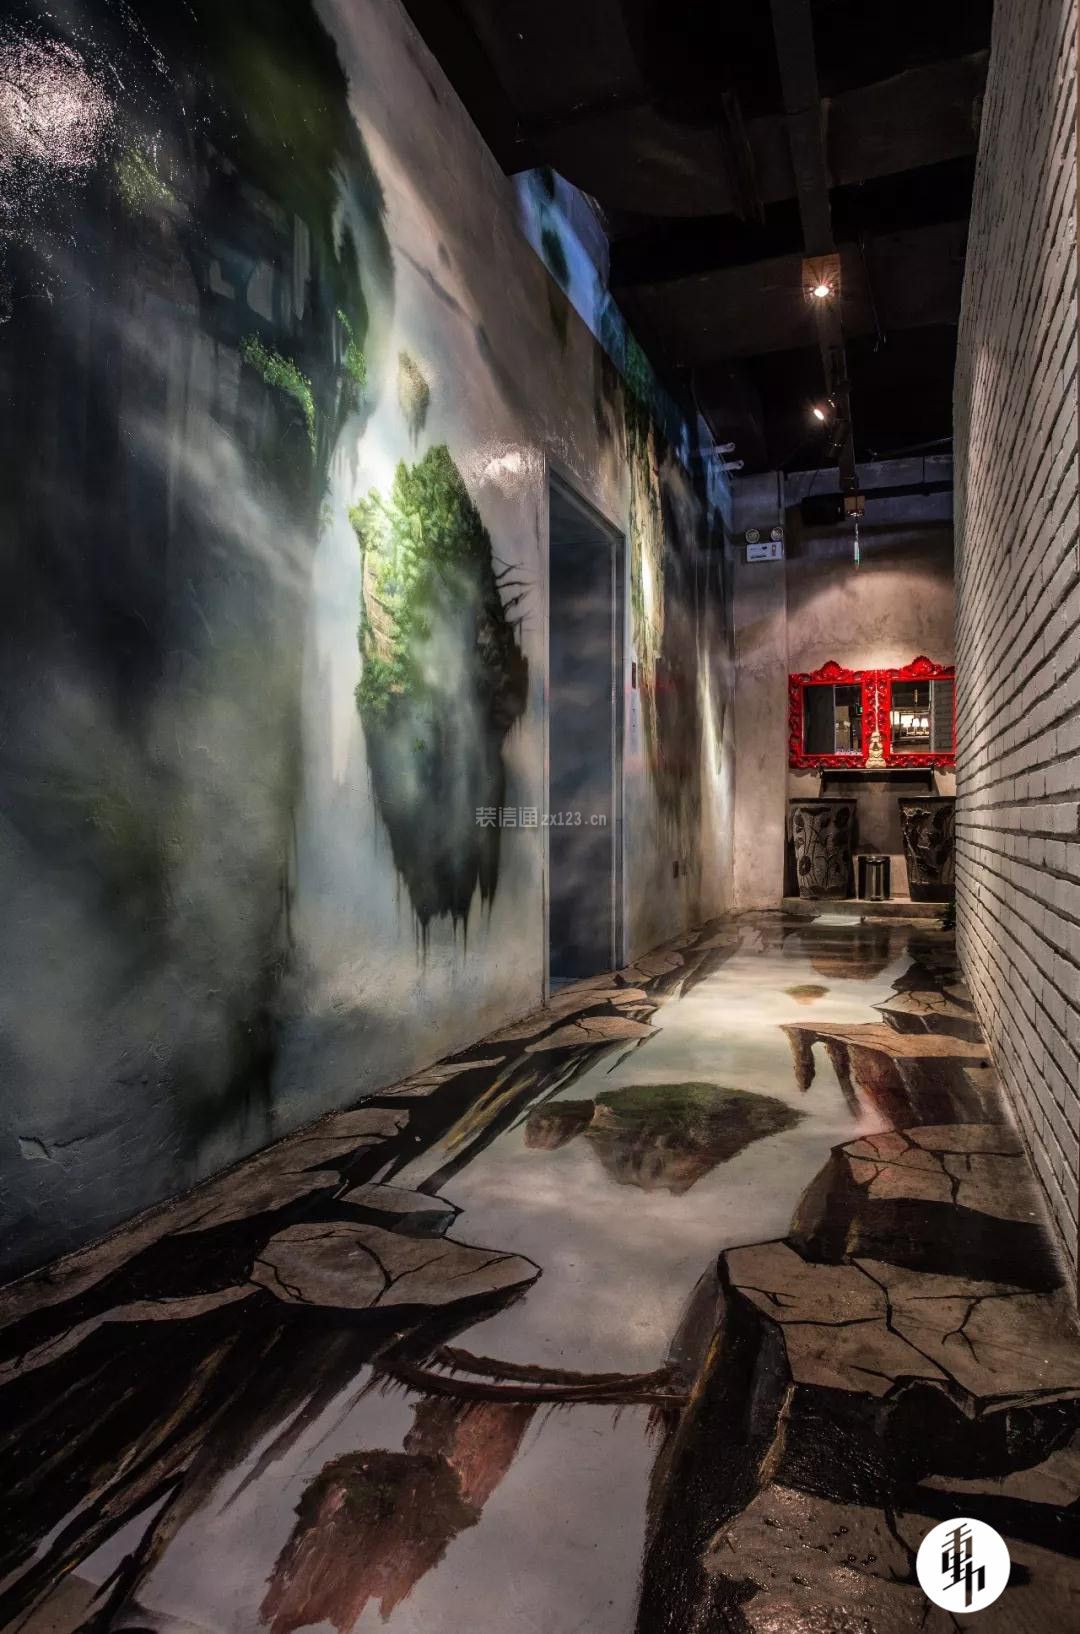 混搭风格咖啡店创意走廊地面设计图片